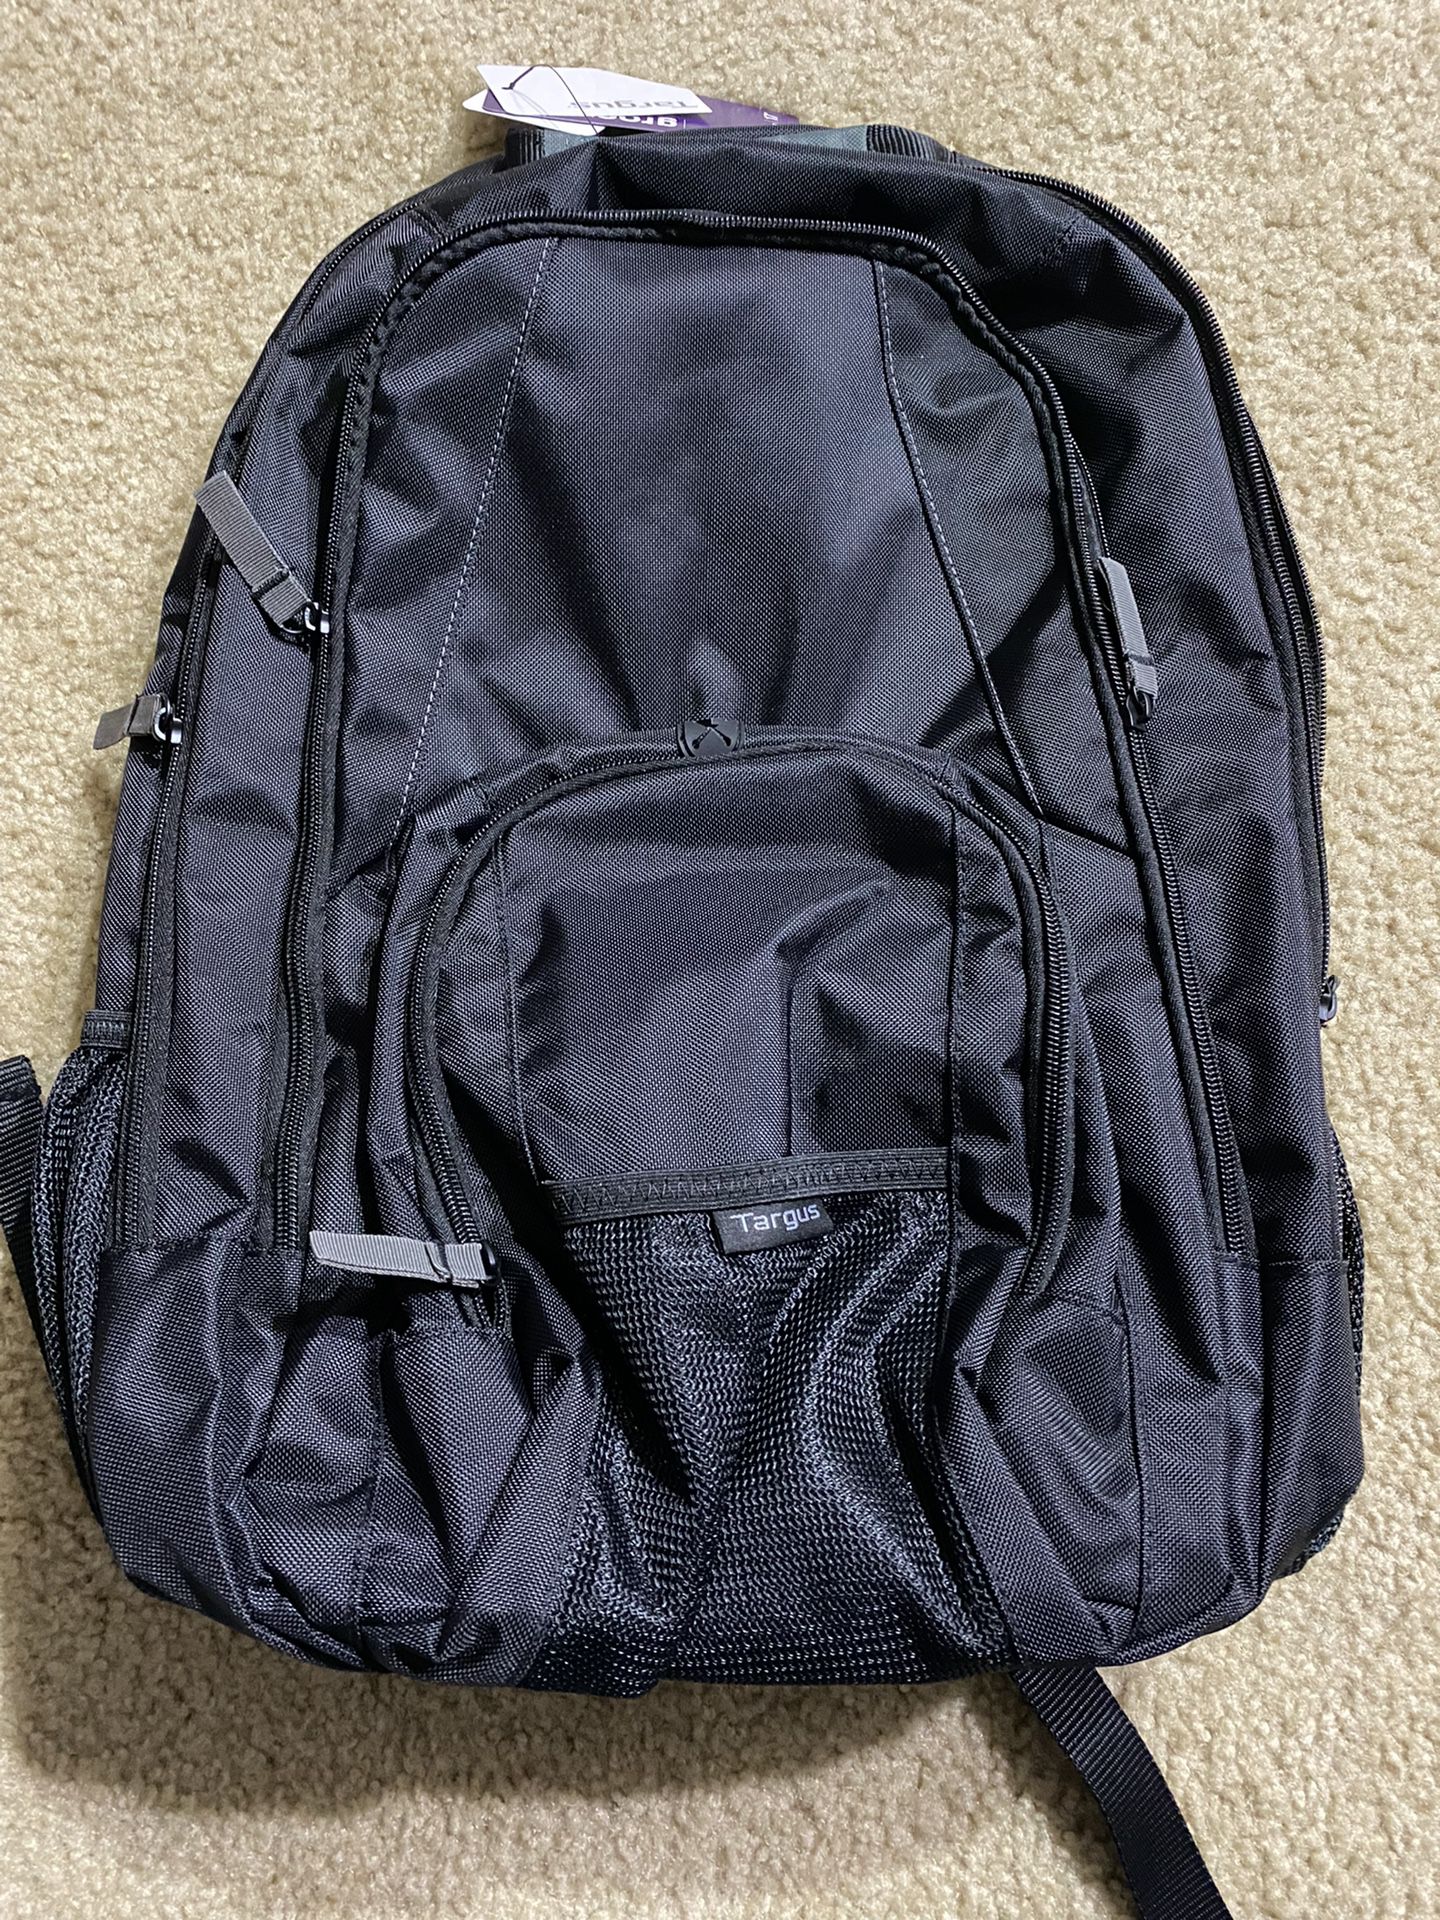 Targus 17” Laptop Backpack 